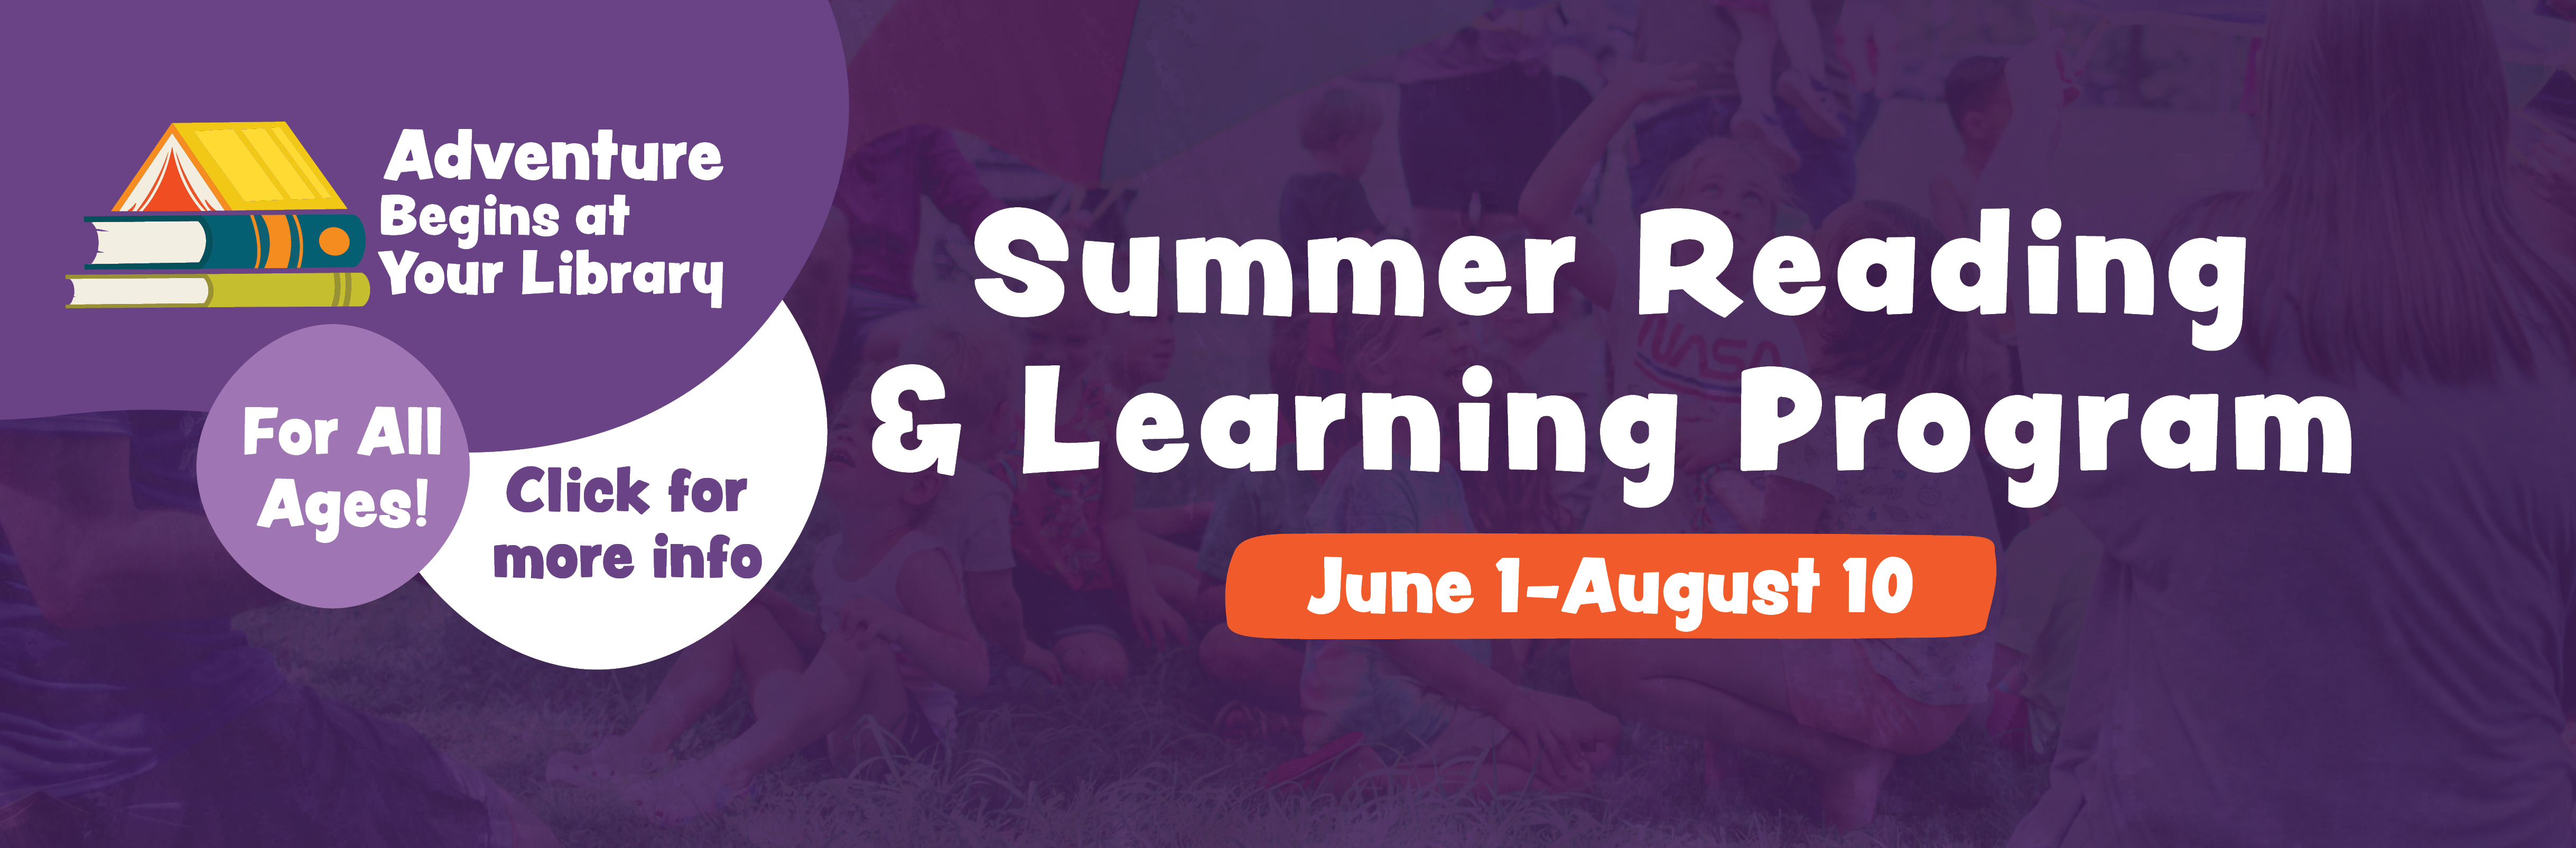 Summer Reading & Learning Program June 1 - August 10